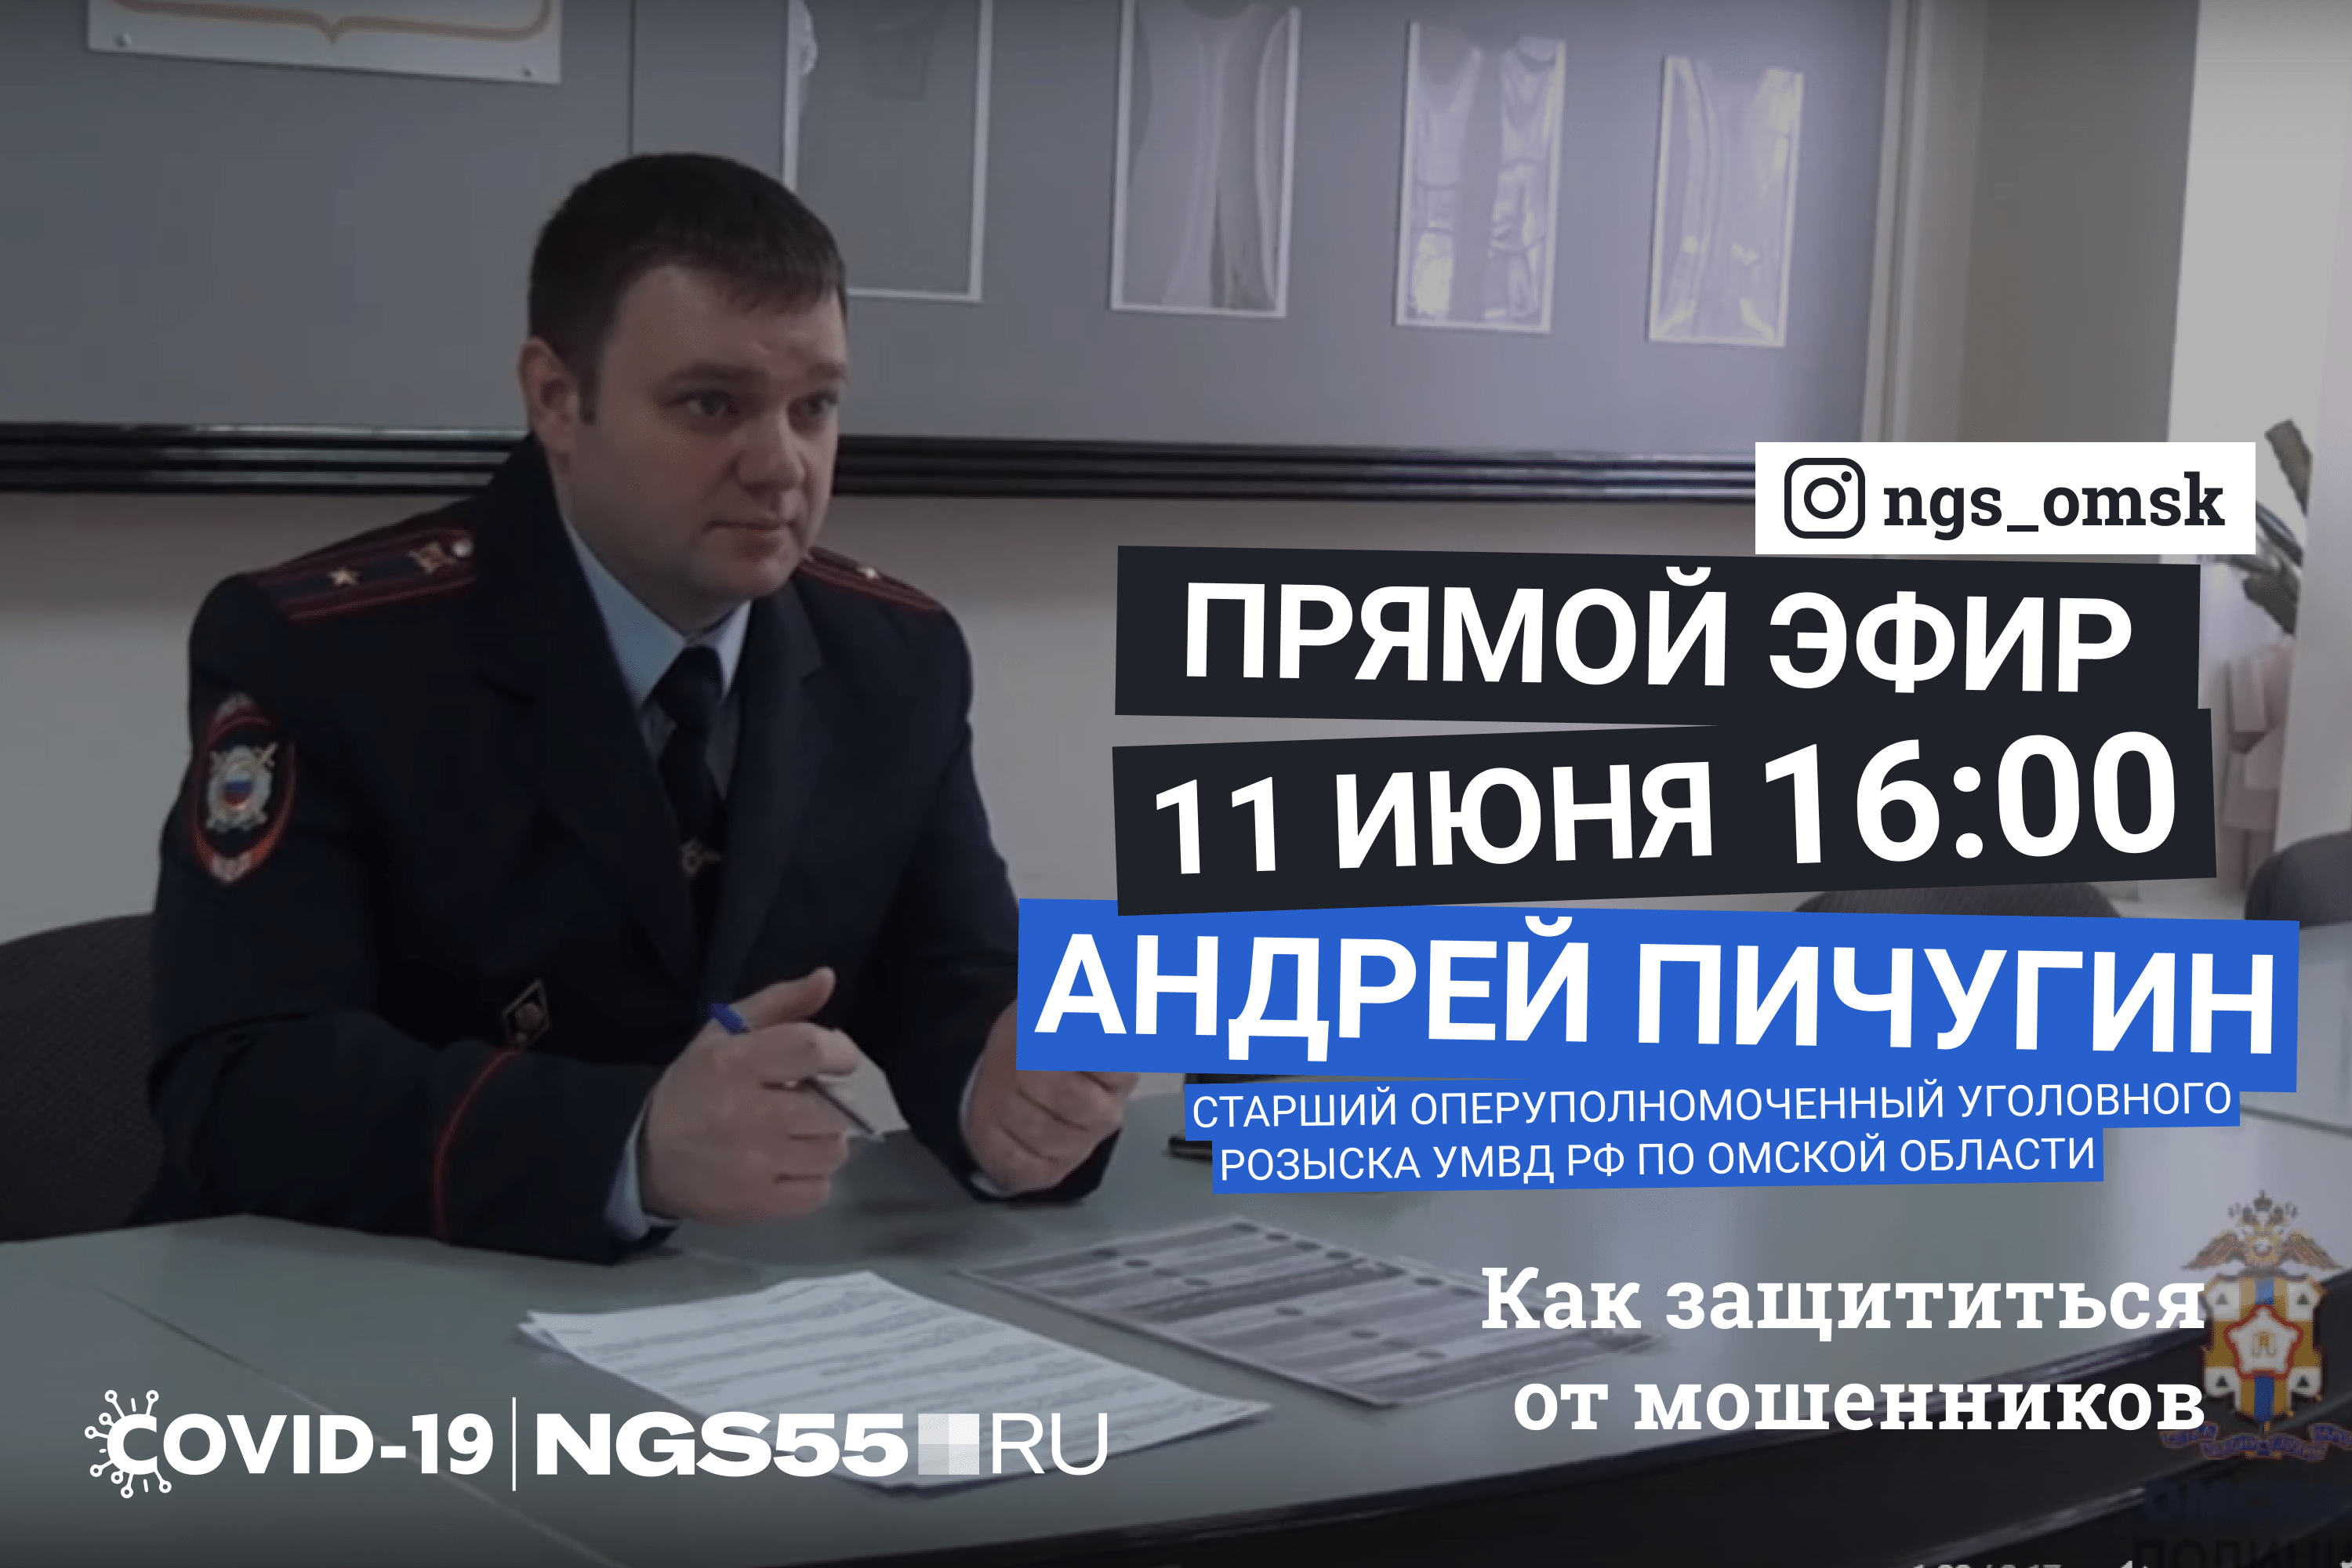 Майор полиции Андрей Пичугин ответит на вопросы подписчиков @ngs_omsk.